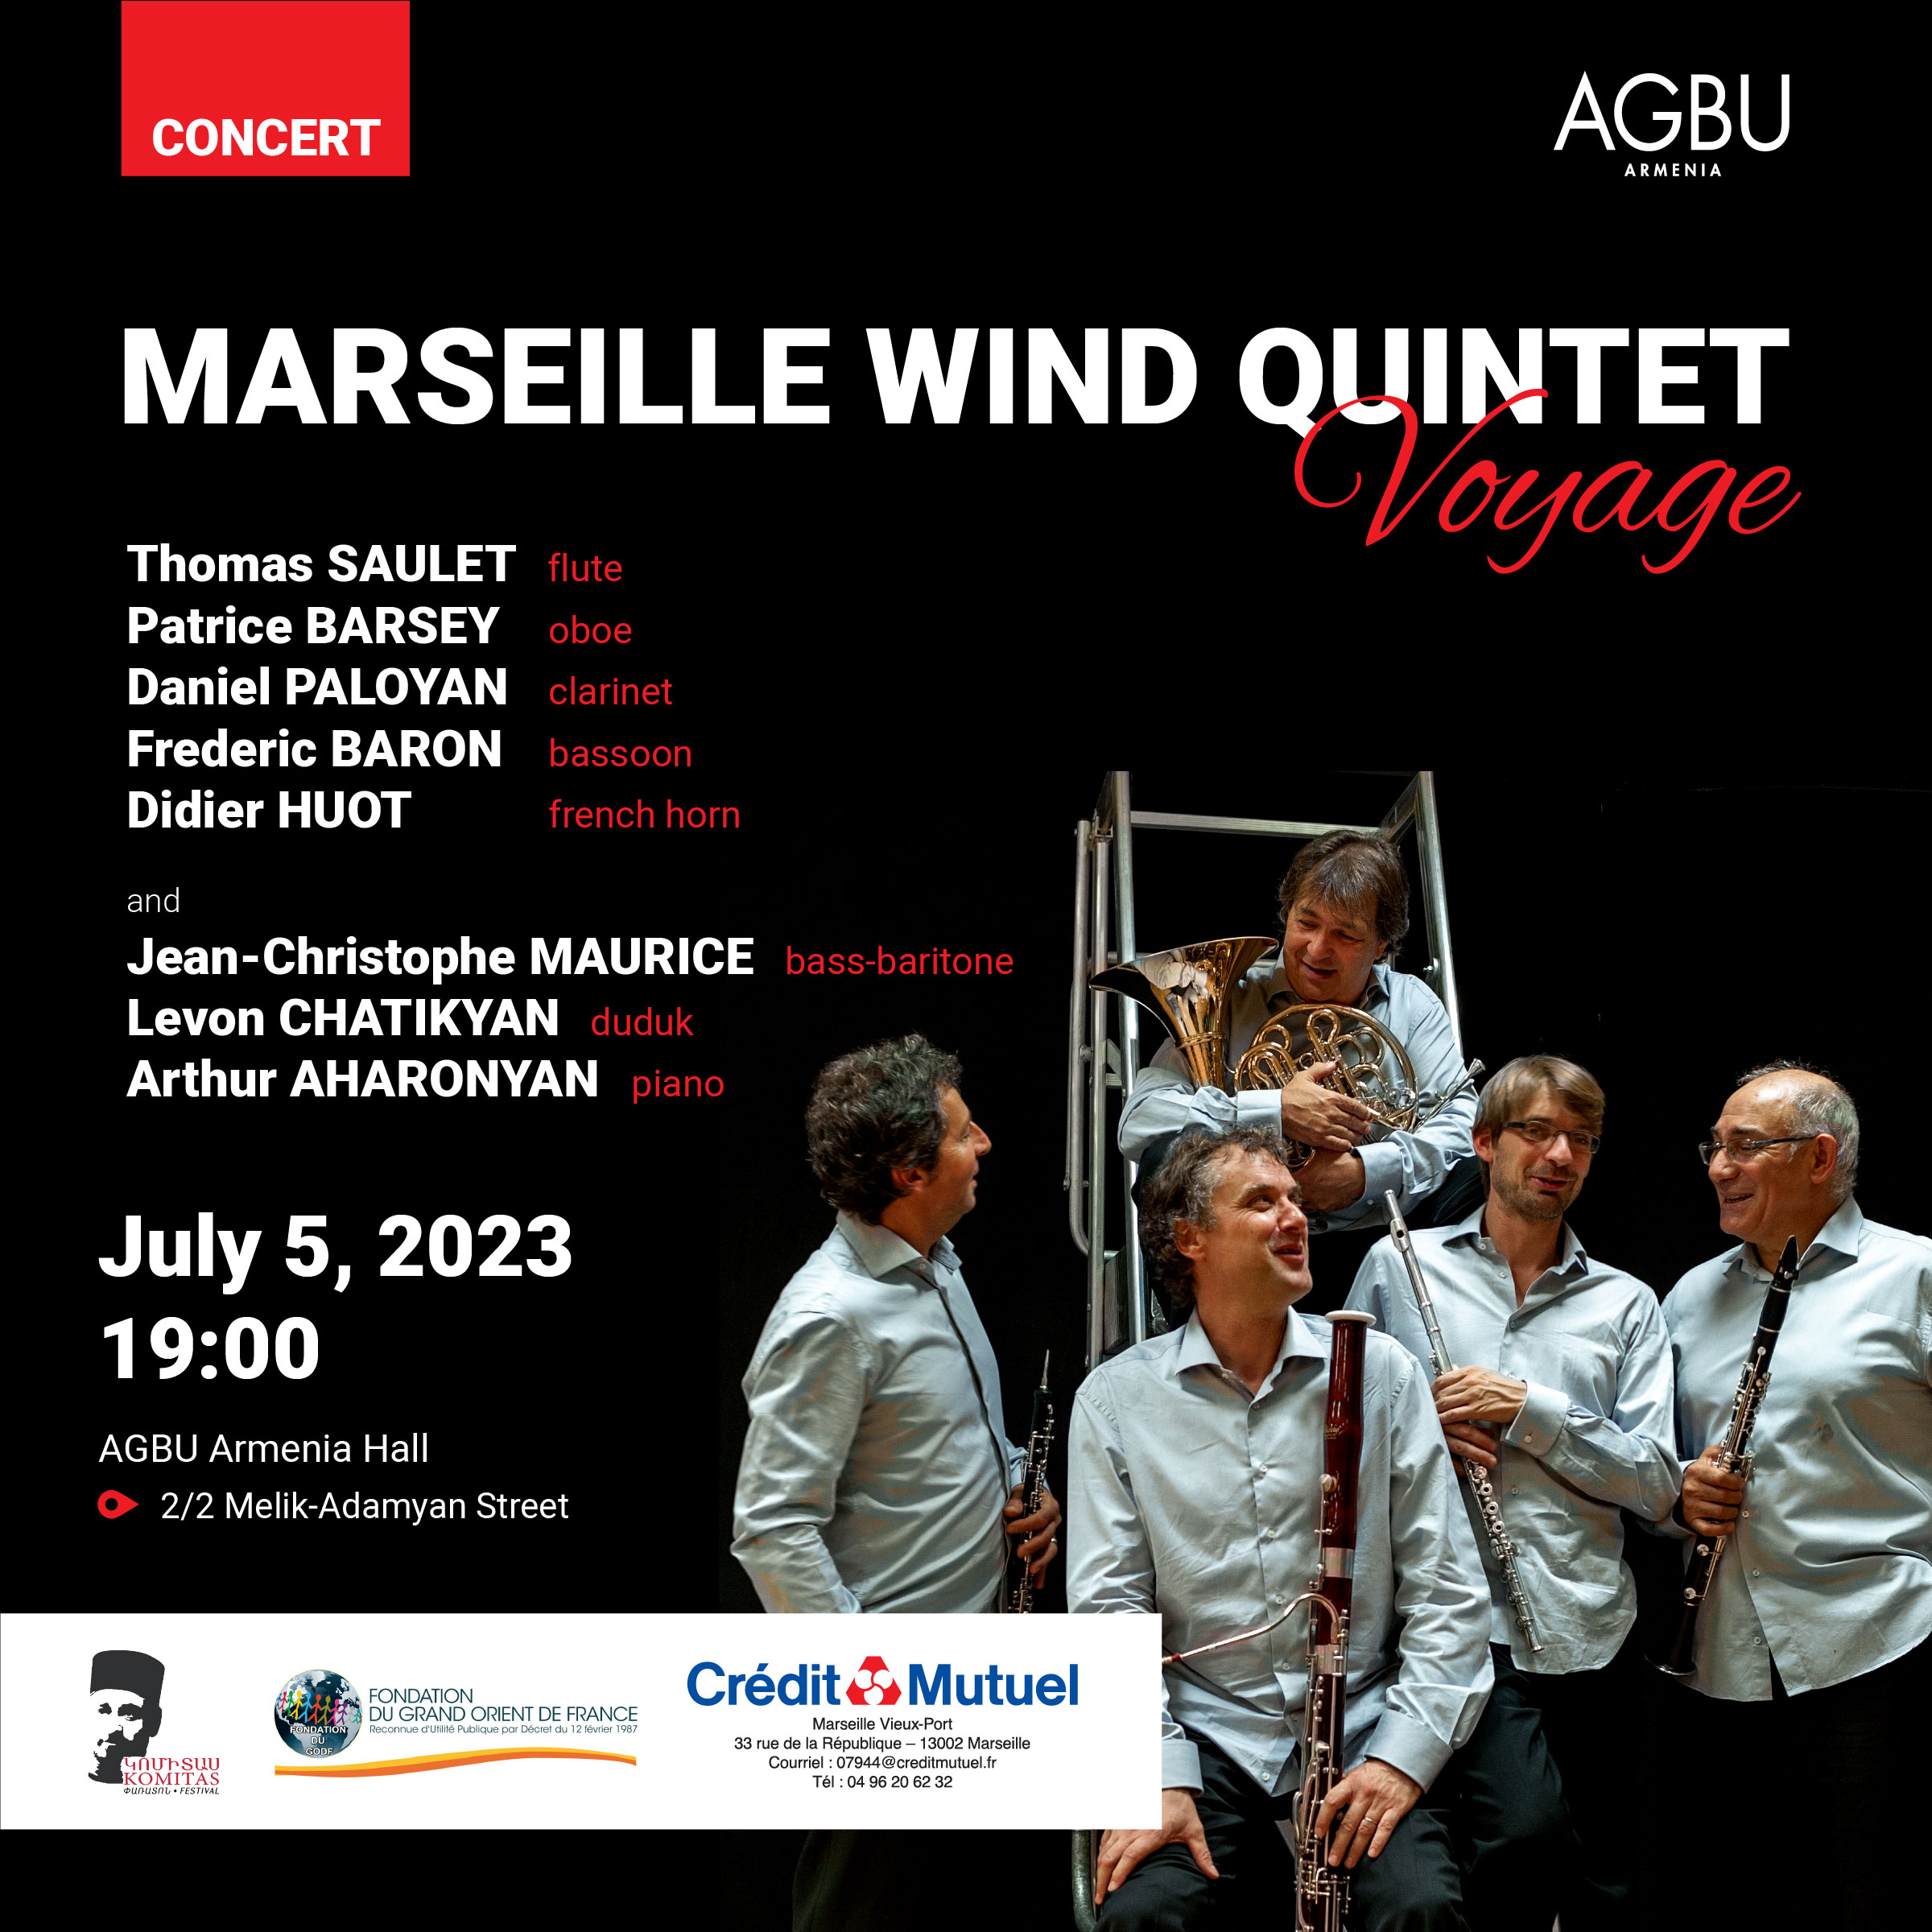 "Voyage" by Marseilles Wind Quintet 